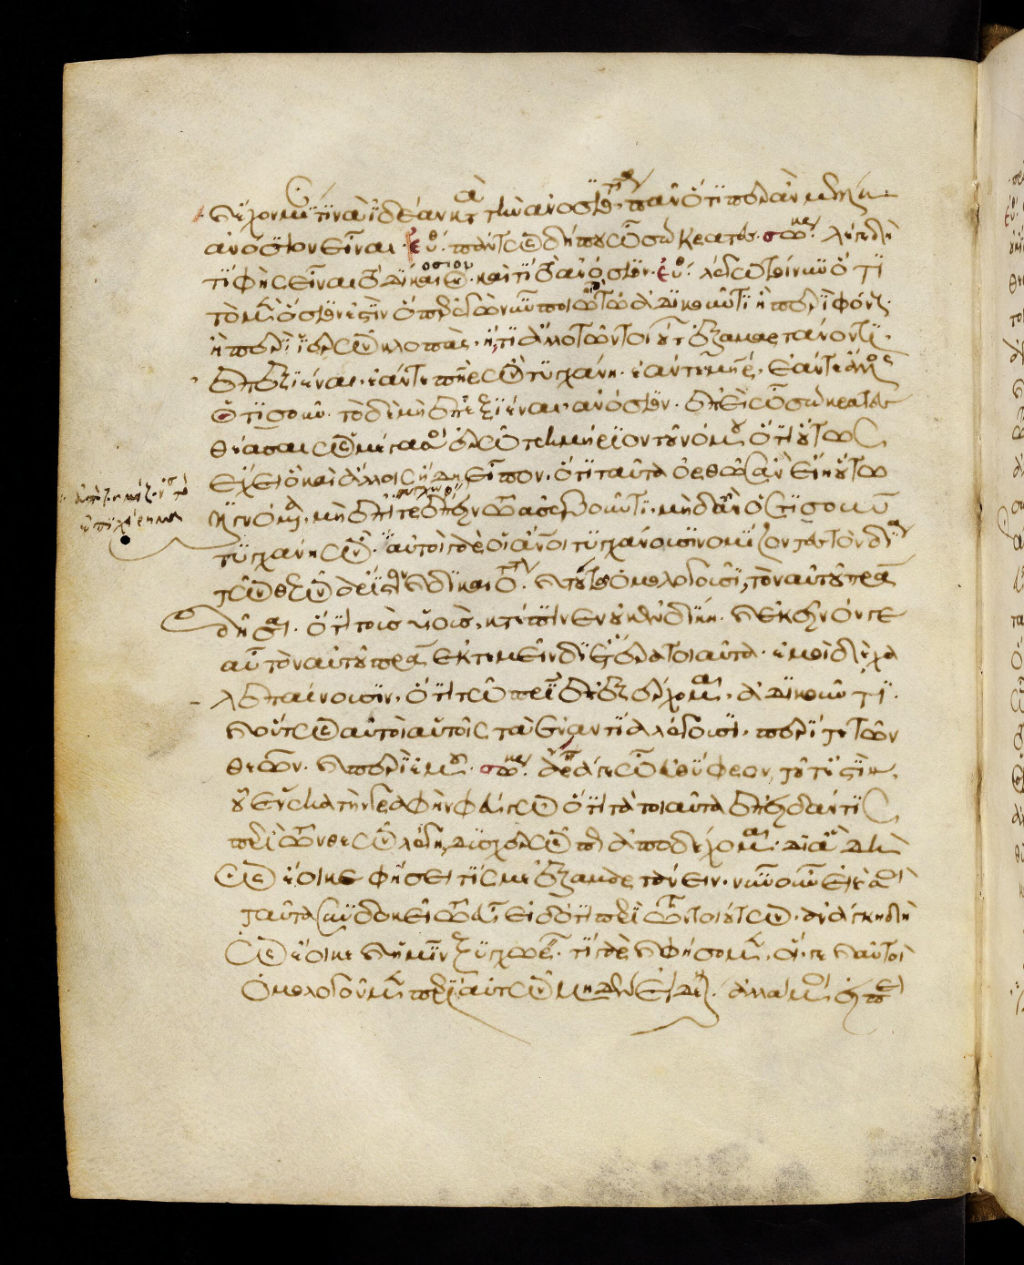 Seite aus Platon-Handschrift (Codex Tubingensis) – Quelle: Universitätsbibliothek Tübingen